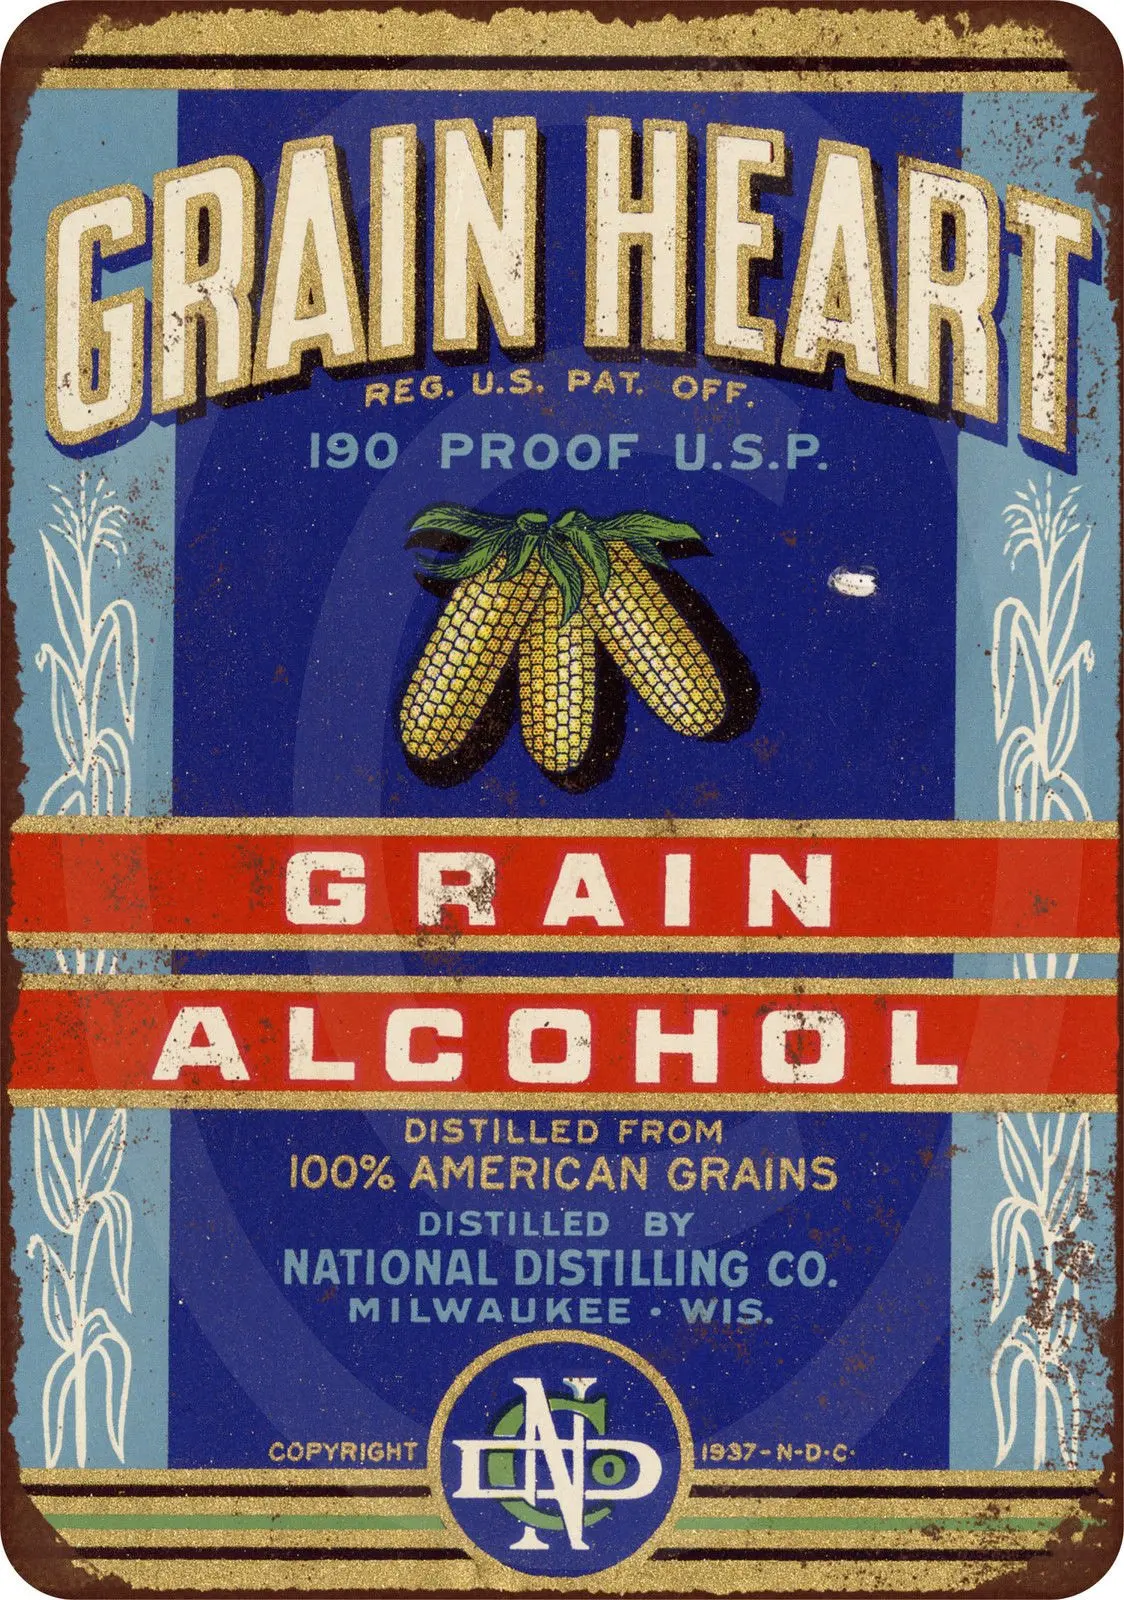 

Под заказ Kraze 1938 зернистость сердце 190 доказательство зерна спирт винтажная репродукция знак 8x12 Сделано в США